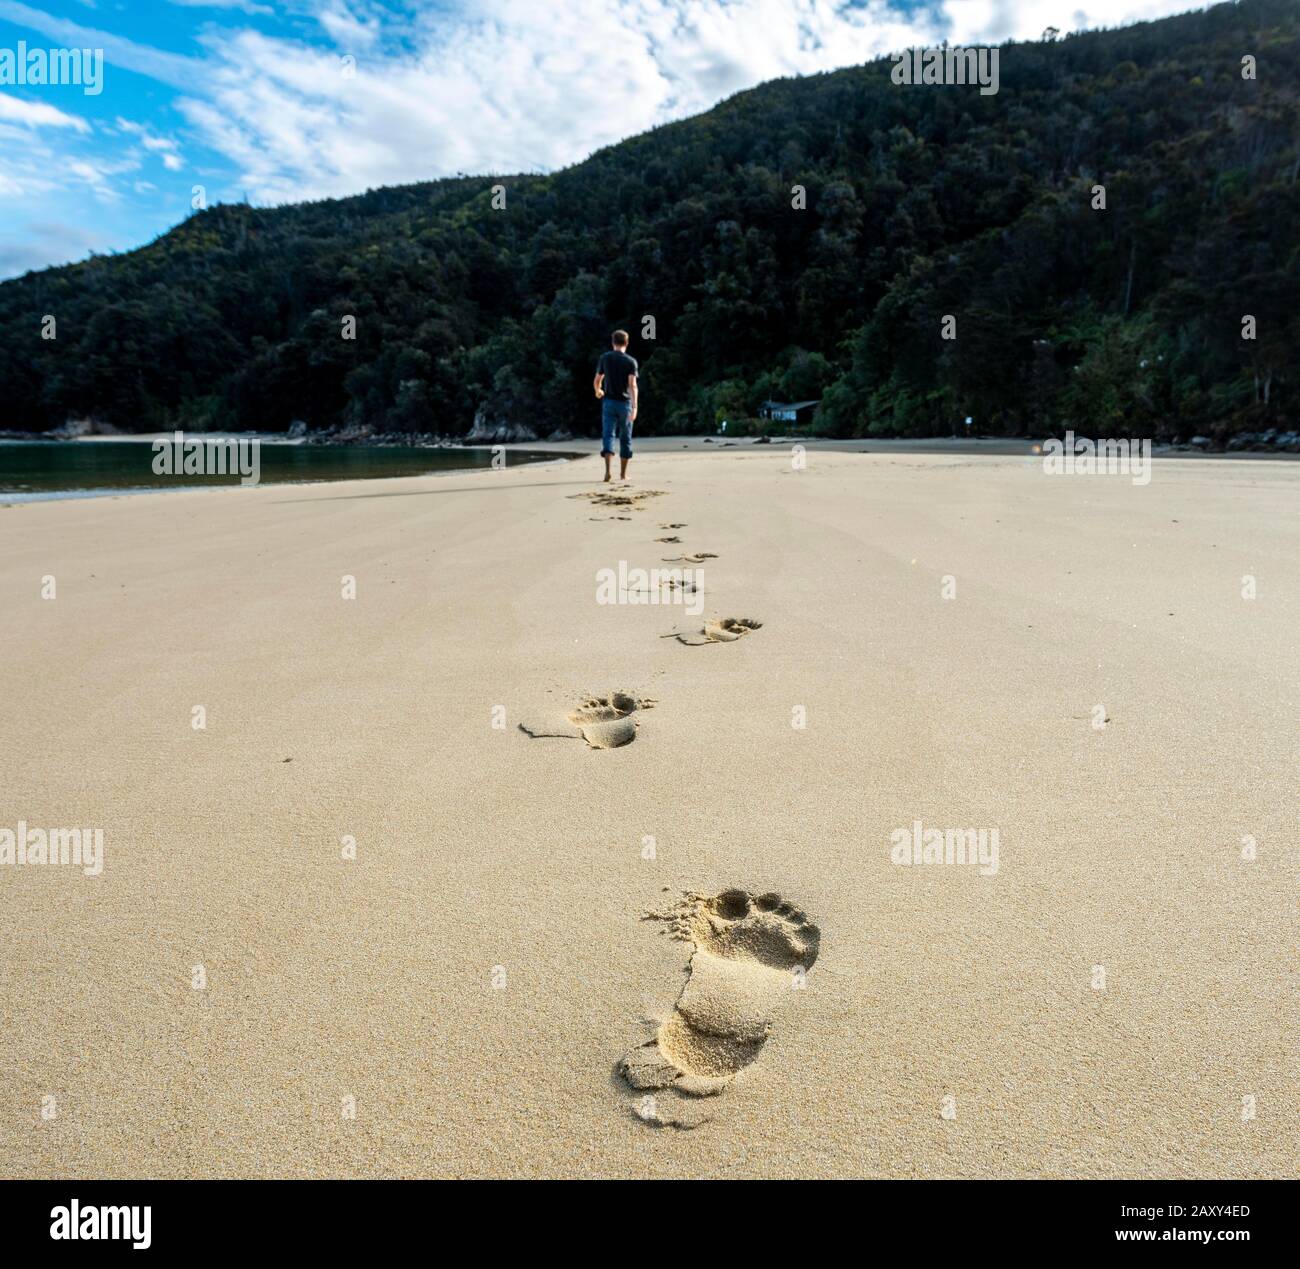 Empreintes dans le sable, jeune homme sur la plage de Stillwell Bay, parc national Abel Tasman, Tasman, île du Sud, Nouvelle-Zélande Banque D'Images